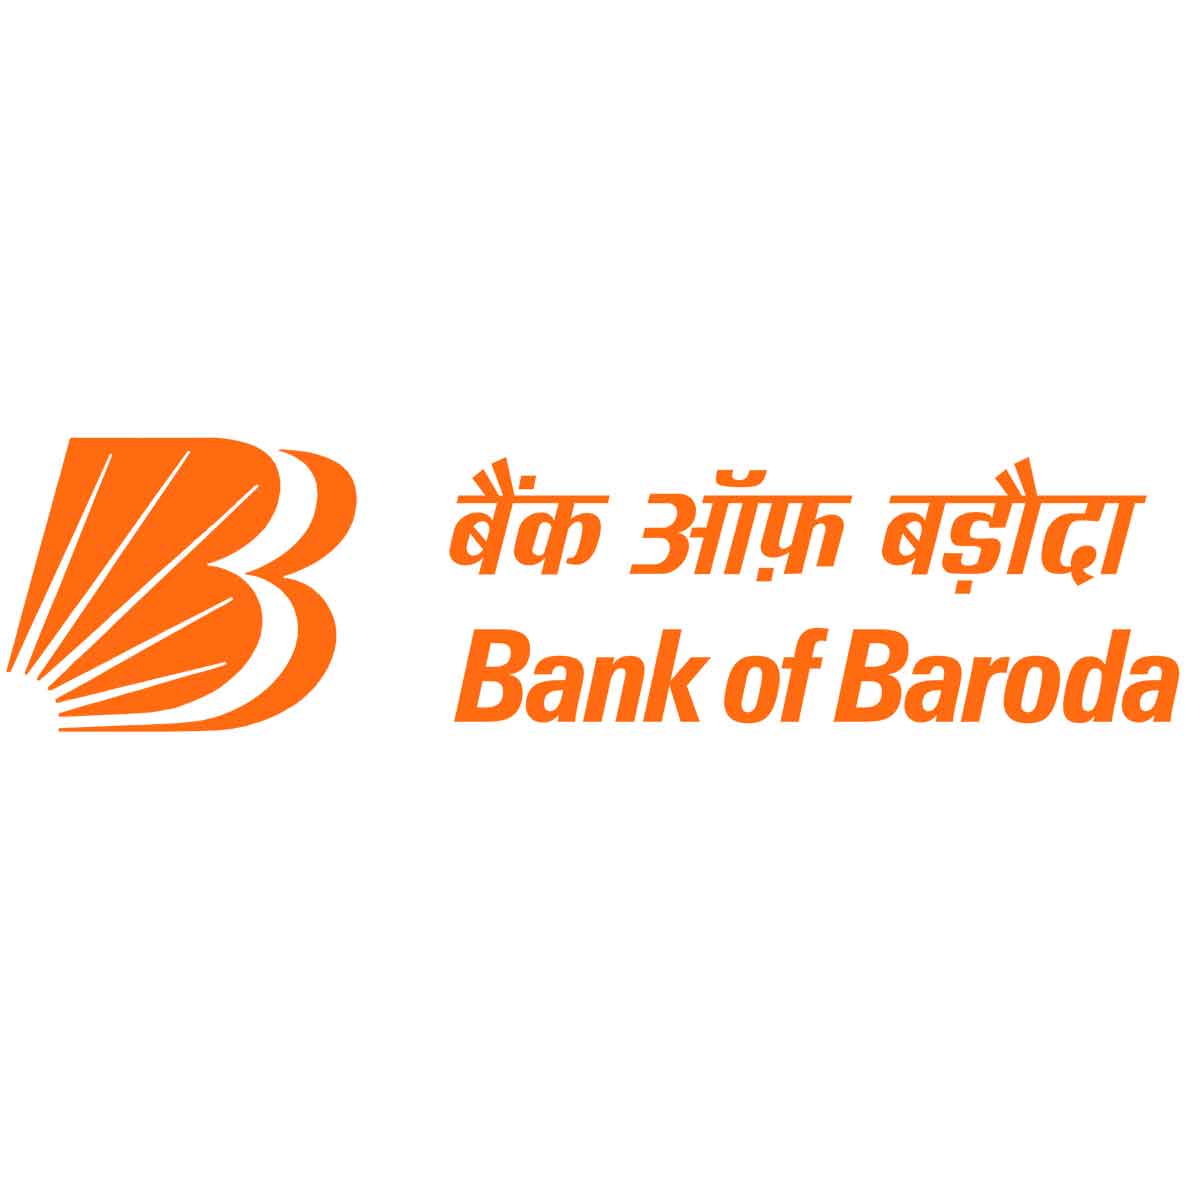 Bob Sr. Relationship Manager Recruitment - Bank Of Baroda Job Vacancies